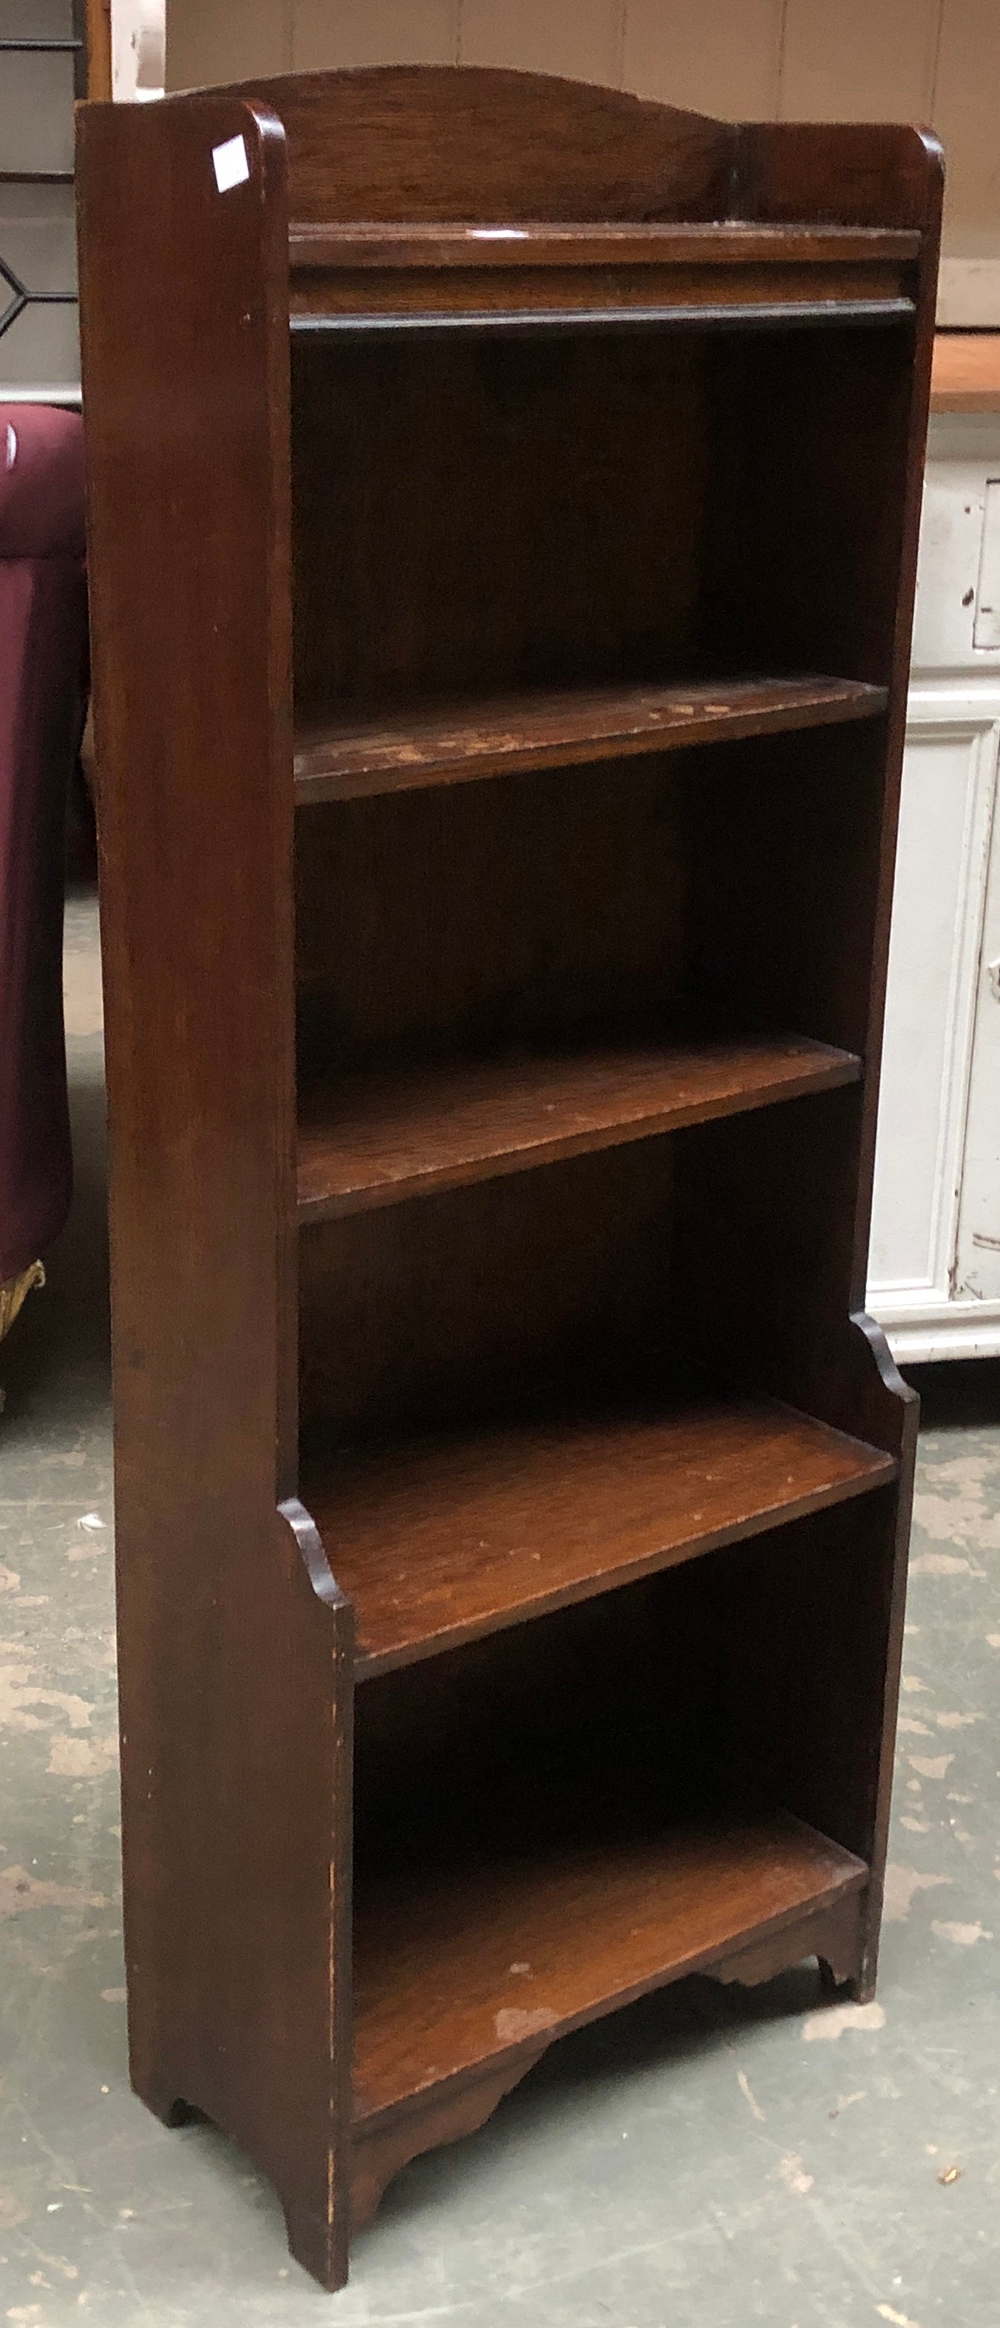 A small oak bookcase, 41cmW 107cmH